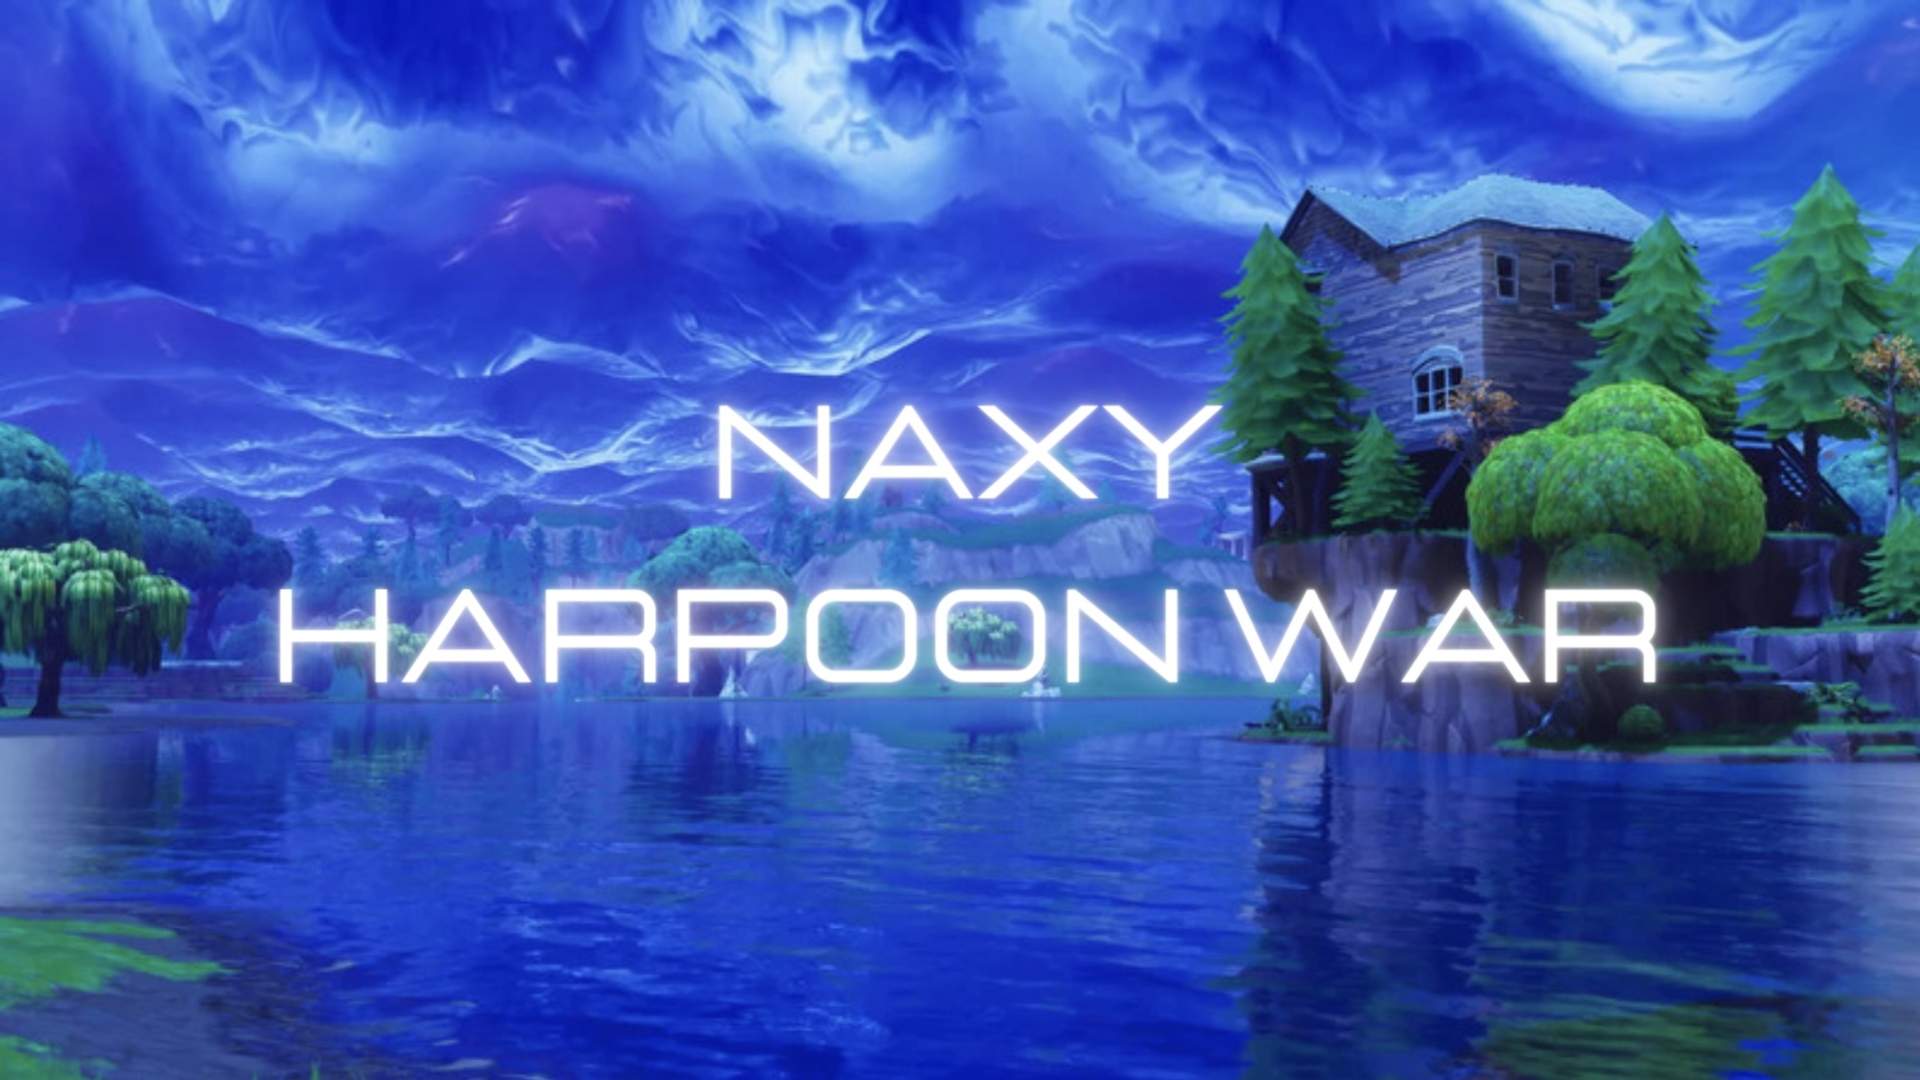 NAXY HARPOON WAR